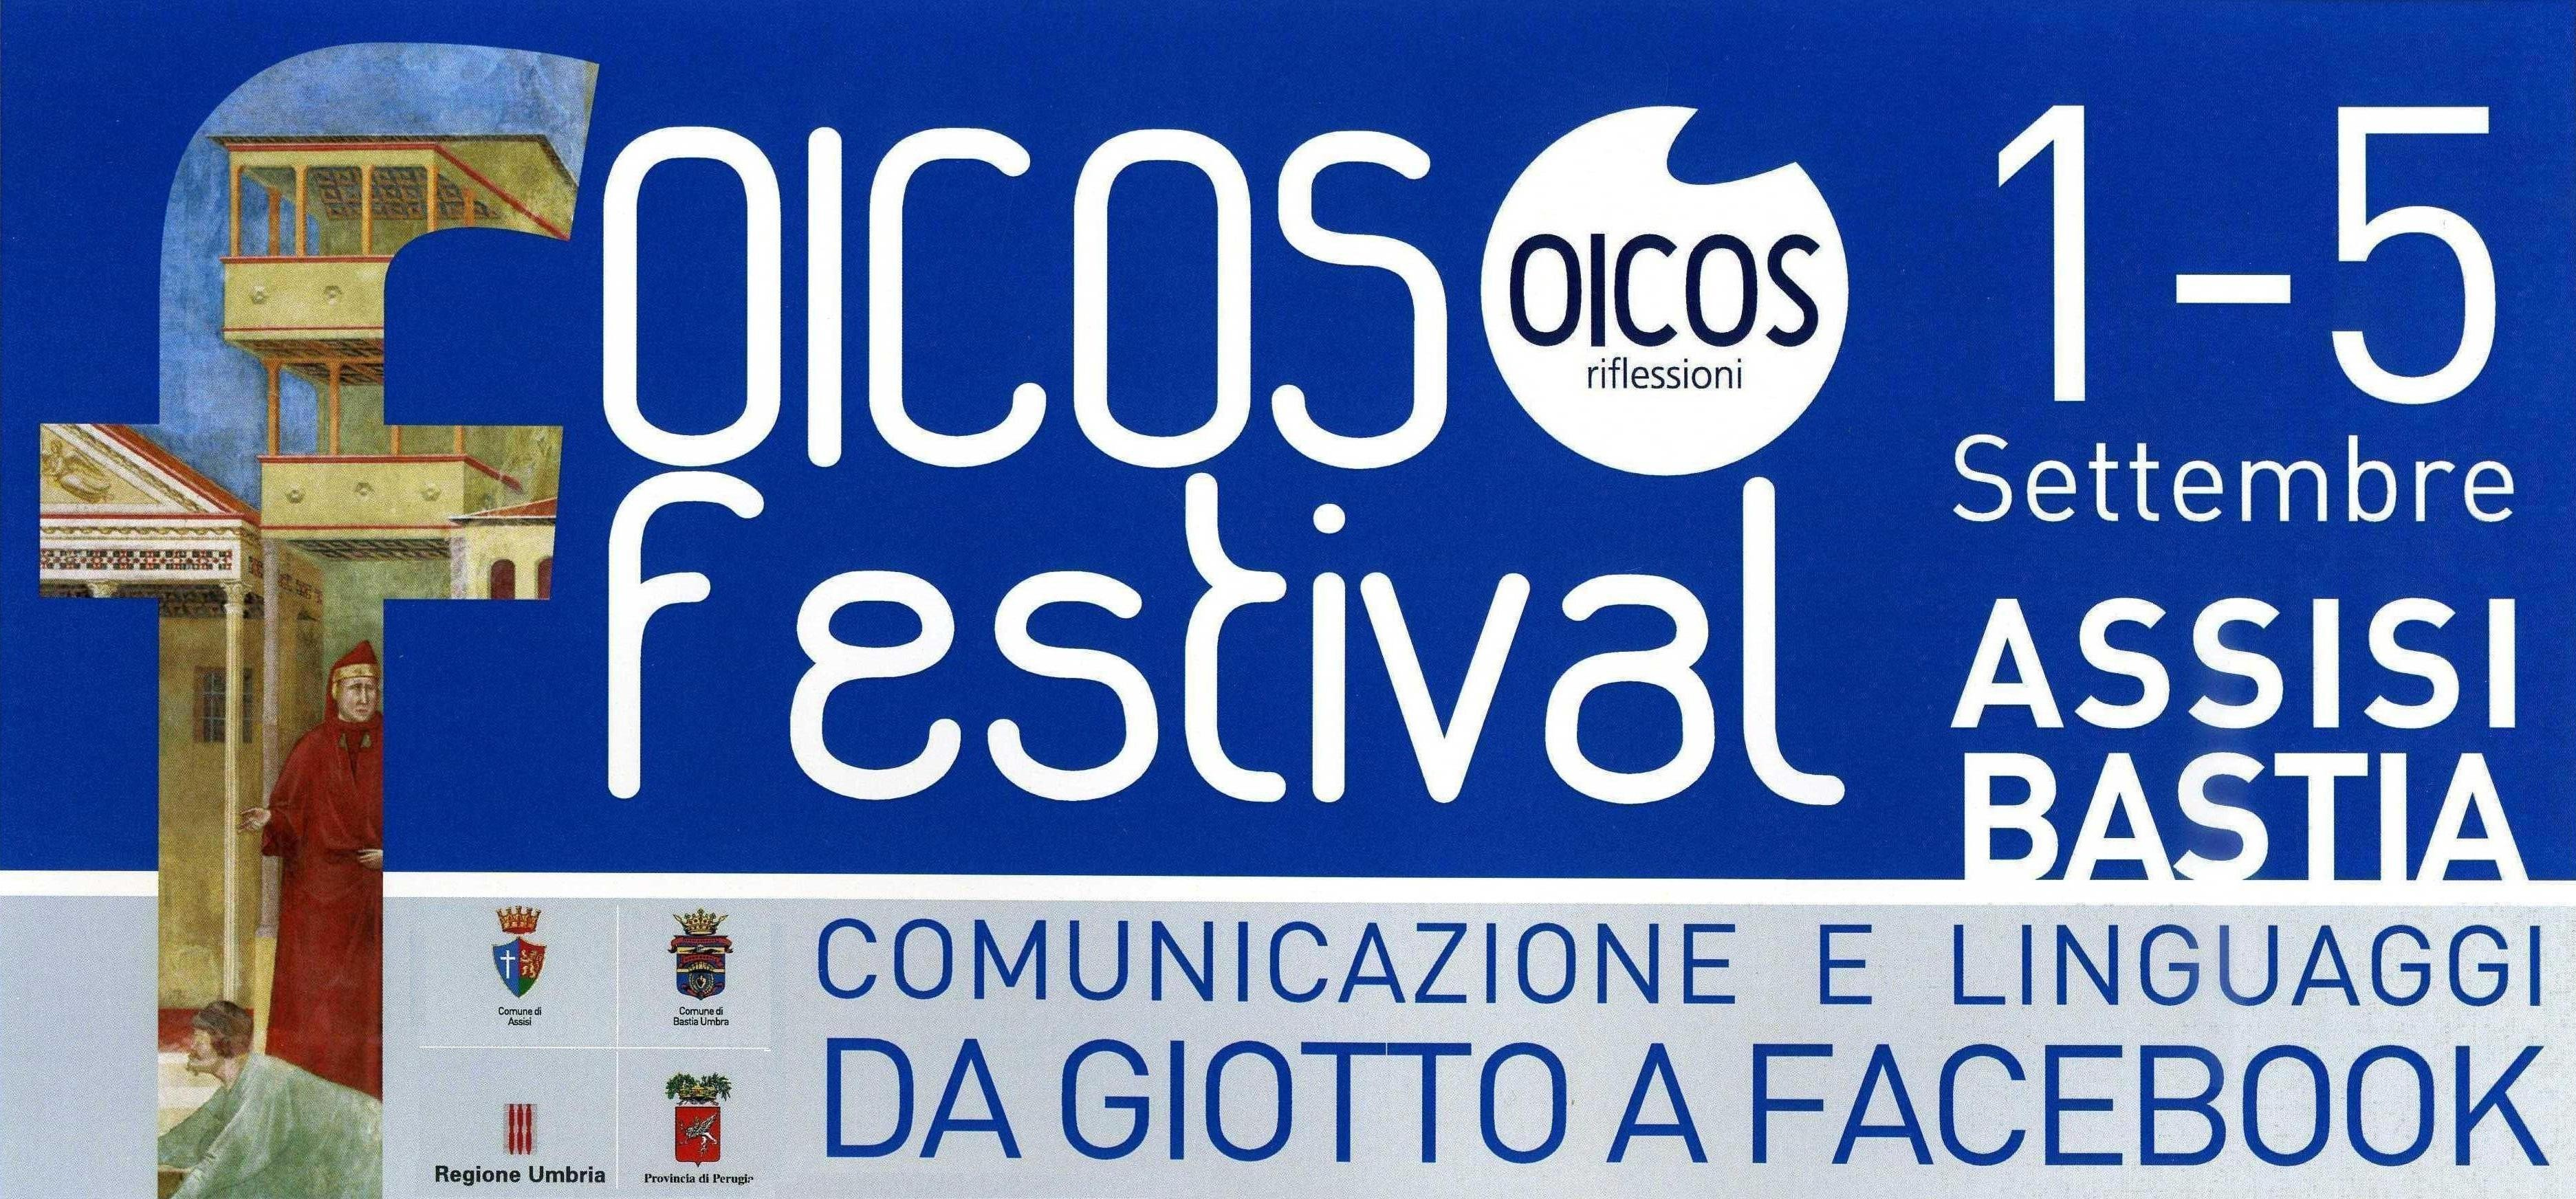 Programma completo il festival è in diretta web tv su www.oicosriflessioni.